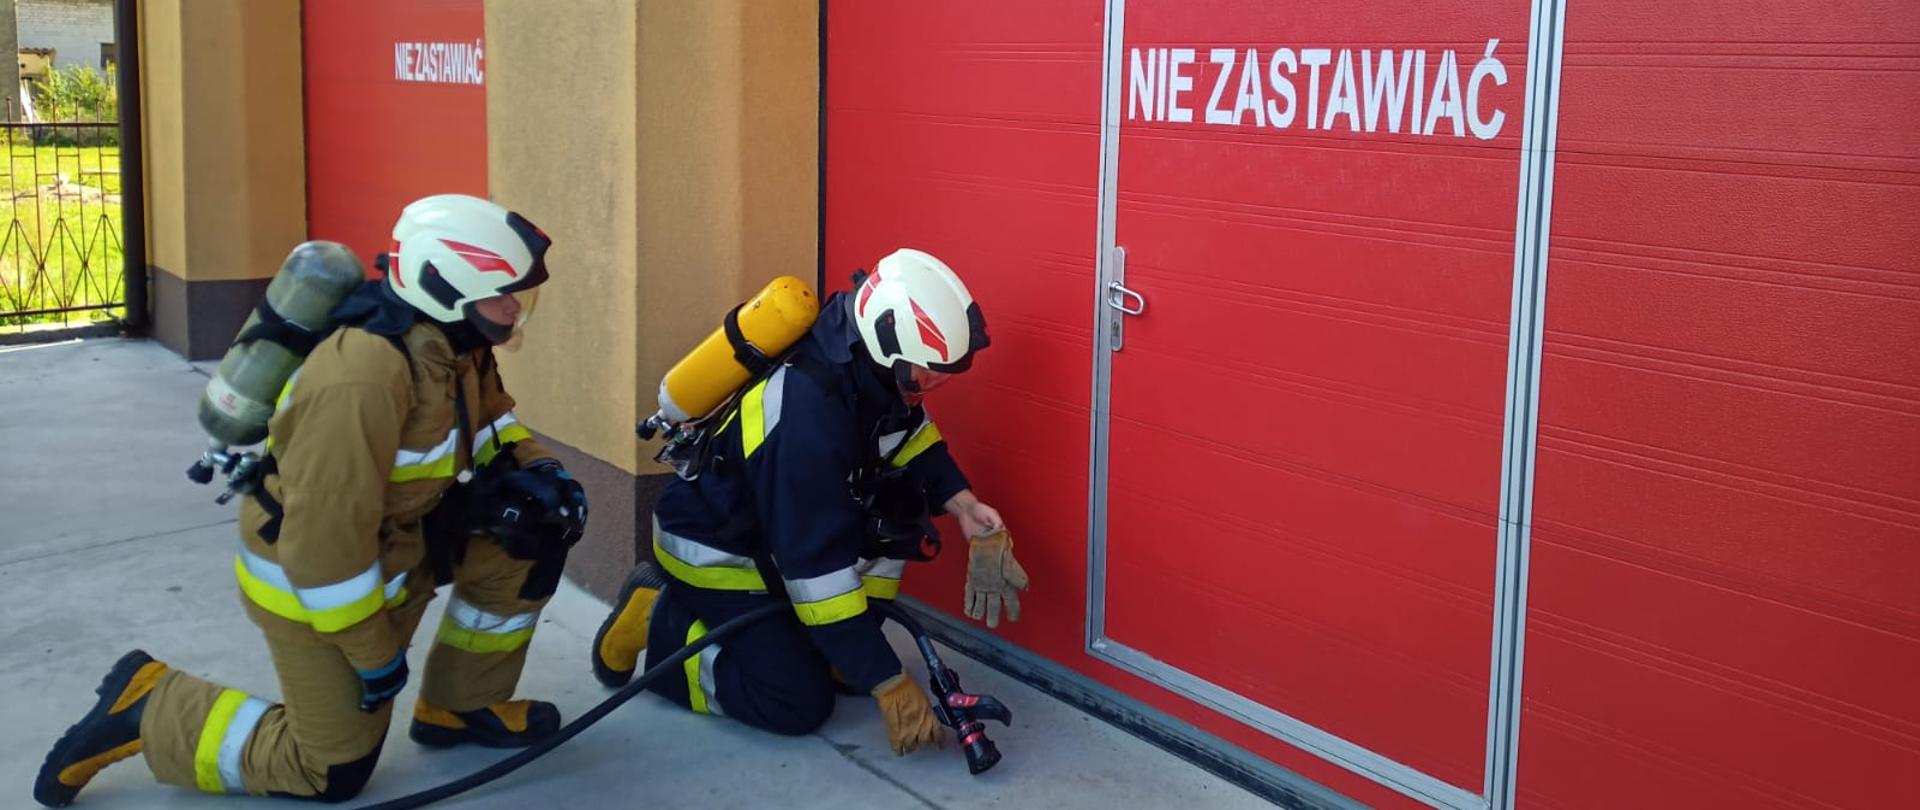 Inspekcje Gotowości Operacyjnej Jednostek OSP KSRG - podczas inspekcji 2 strażacy w ubraniu specjalnym i aparatach ODO przenoszą wąż pożarniczy, patrzą na czerwona bramę garażu.